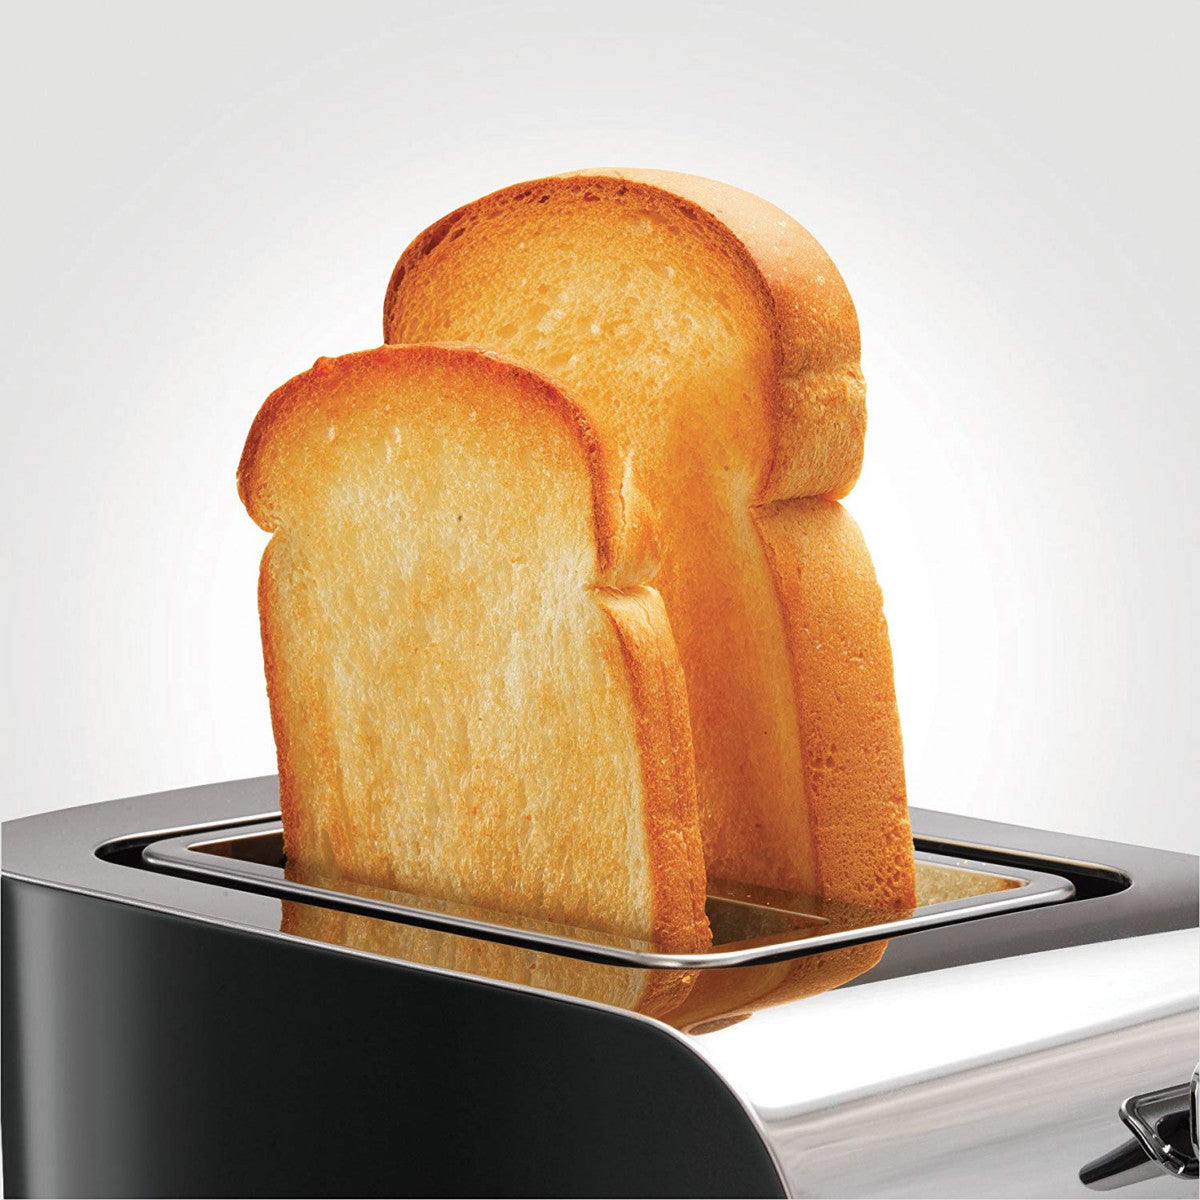 Morphy Richards Equip 2 Slice Toaster 222054 Brushed Black/Silver